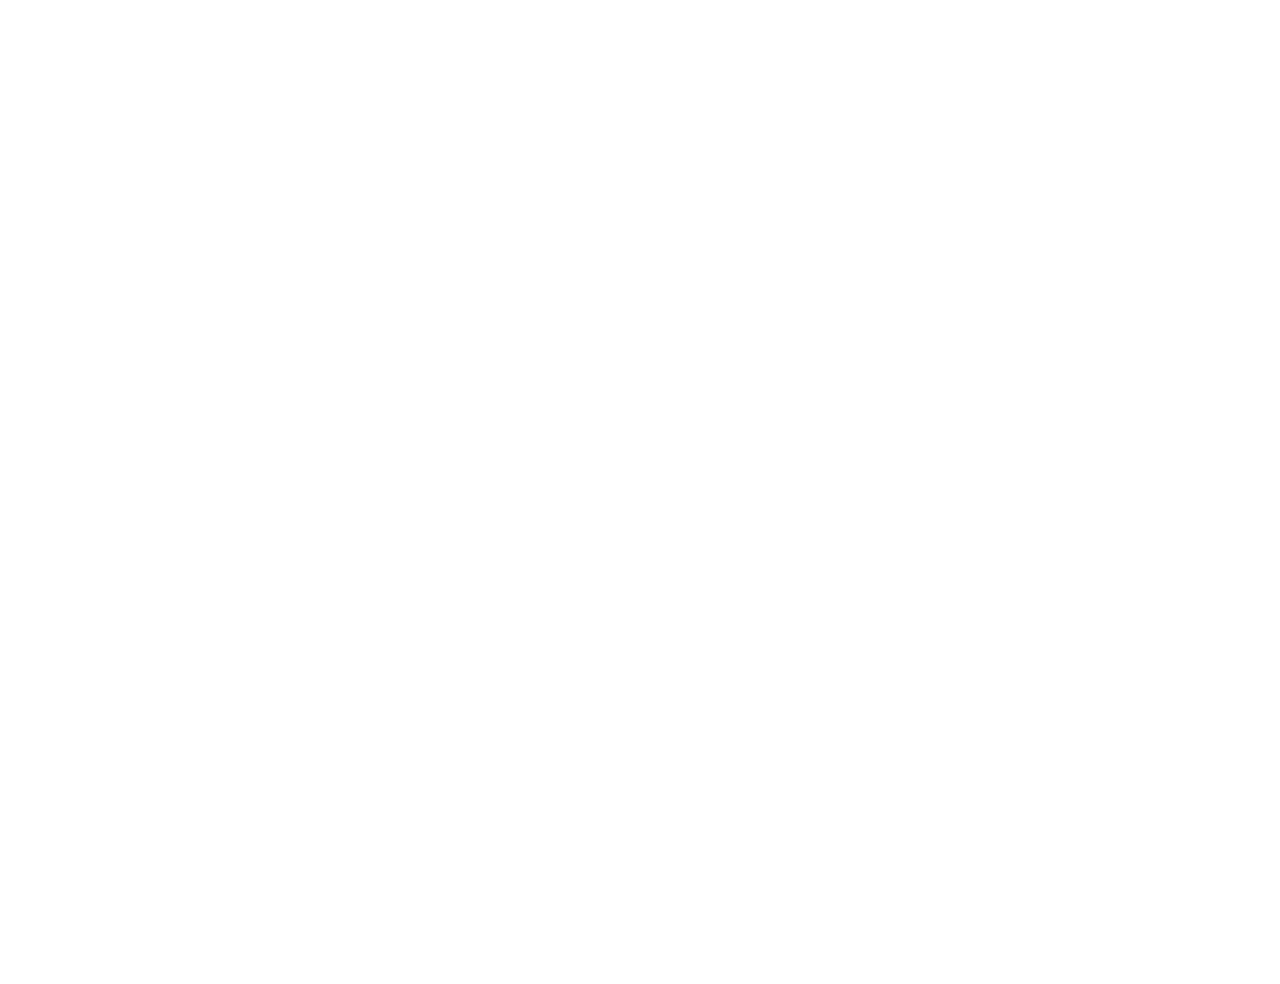 Bike Mash & Haircuts, Inc.'s web page